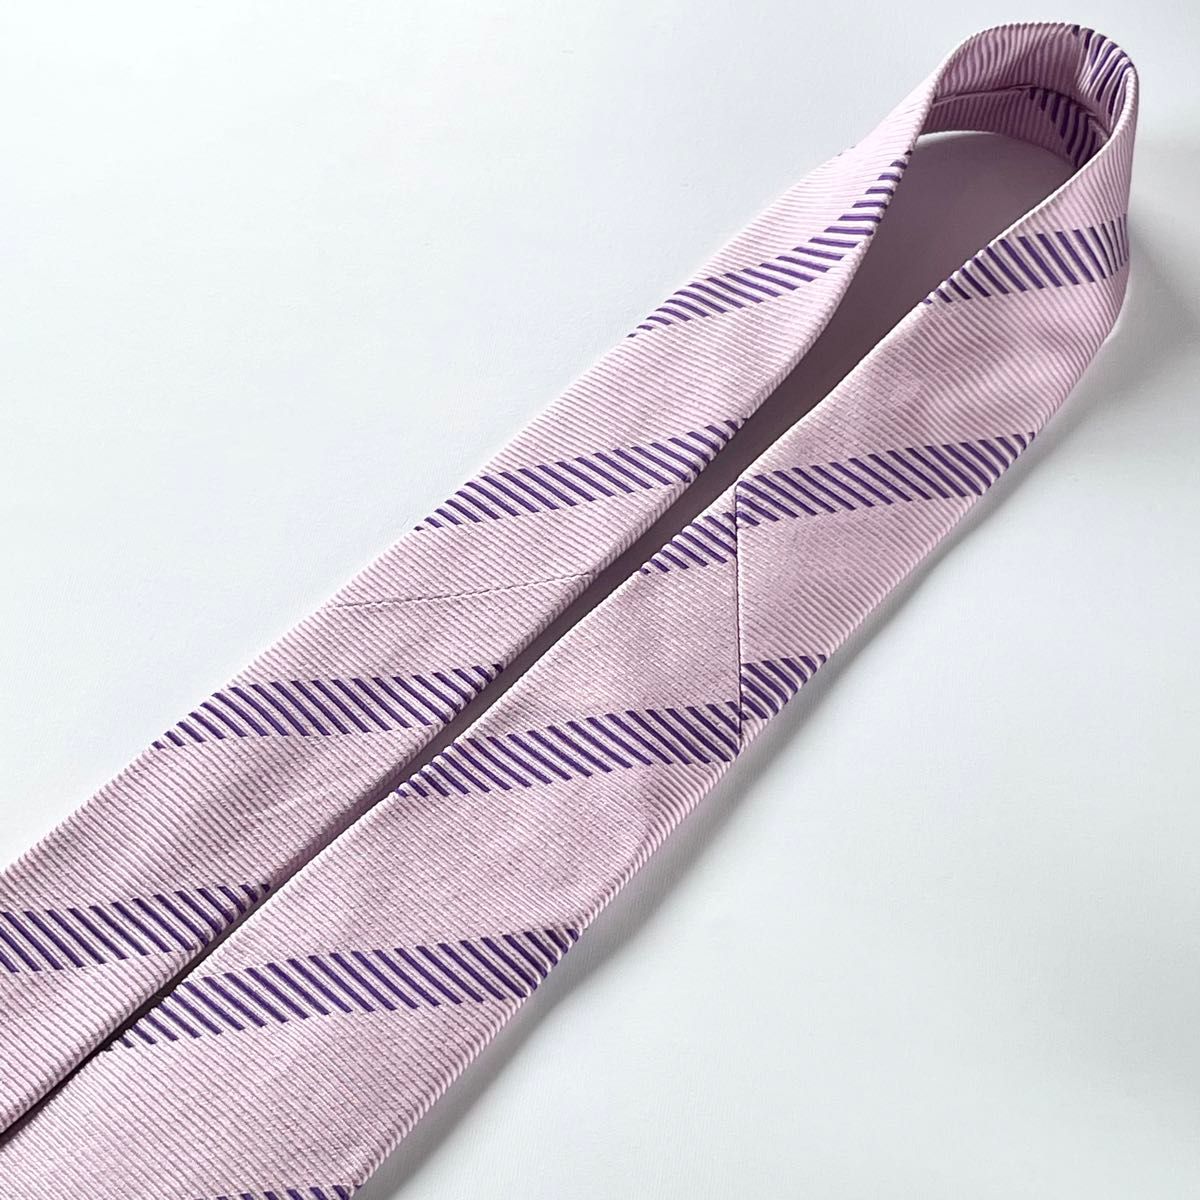 ポールスミス(Paul Smith) 光沢 ネクタイ ストライプ 柄 ピンク パープル 紫 大剣幅 7.9cm 日本製 シルク